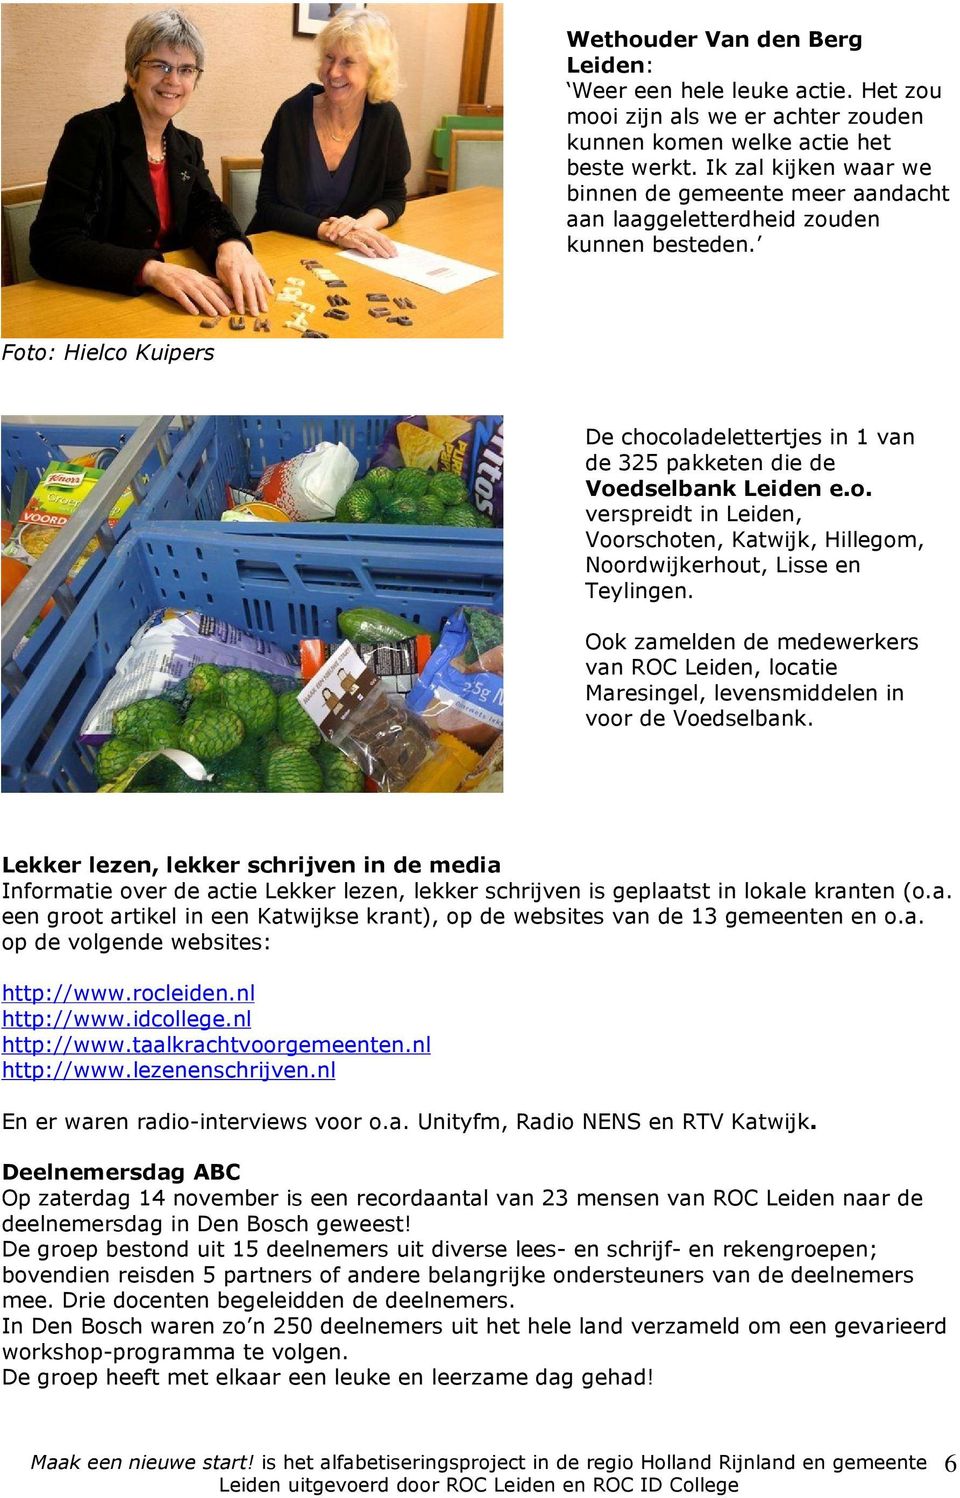 Ook zamelden de medewerkers van ROC Leiden, locatie Maresingel, levensmiddelen in voor de Voedselbank.